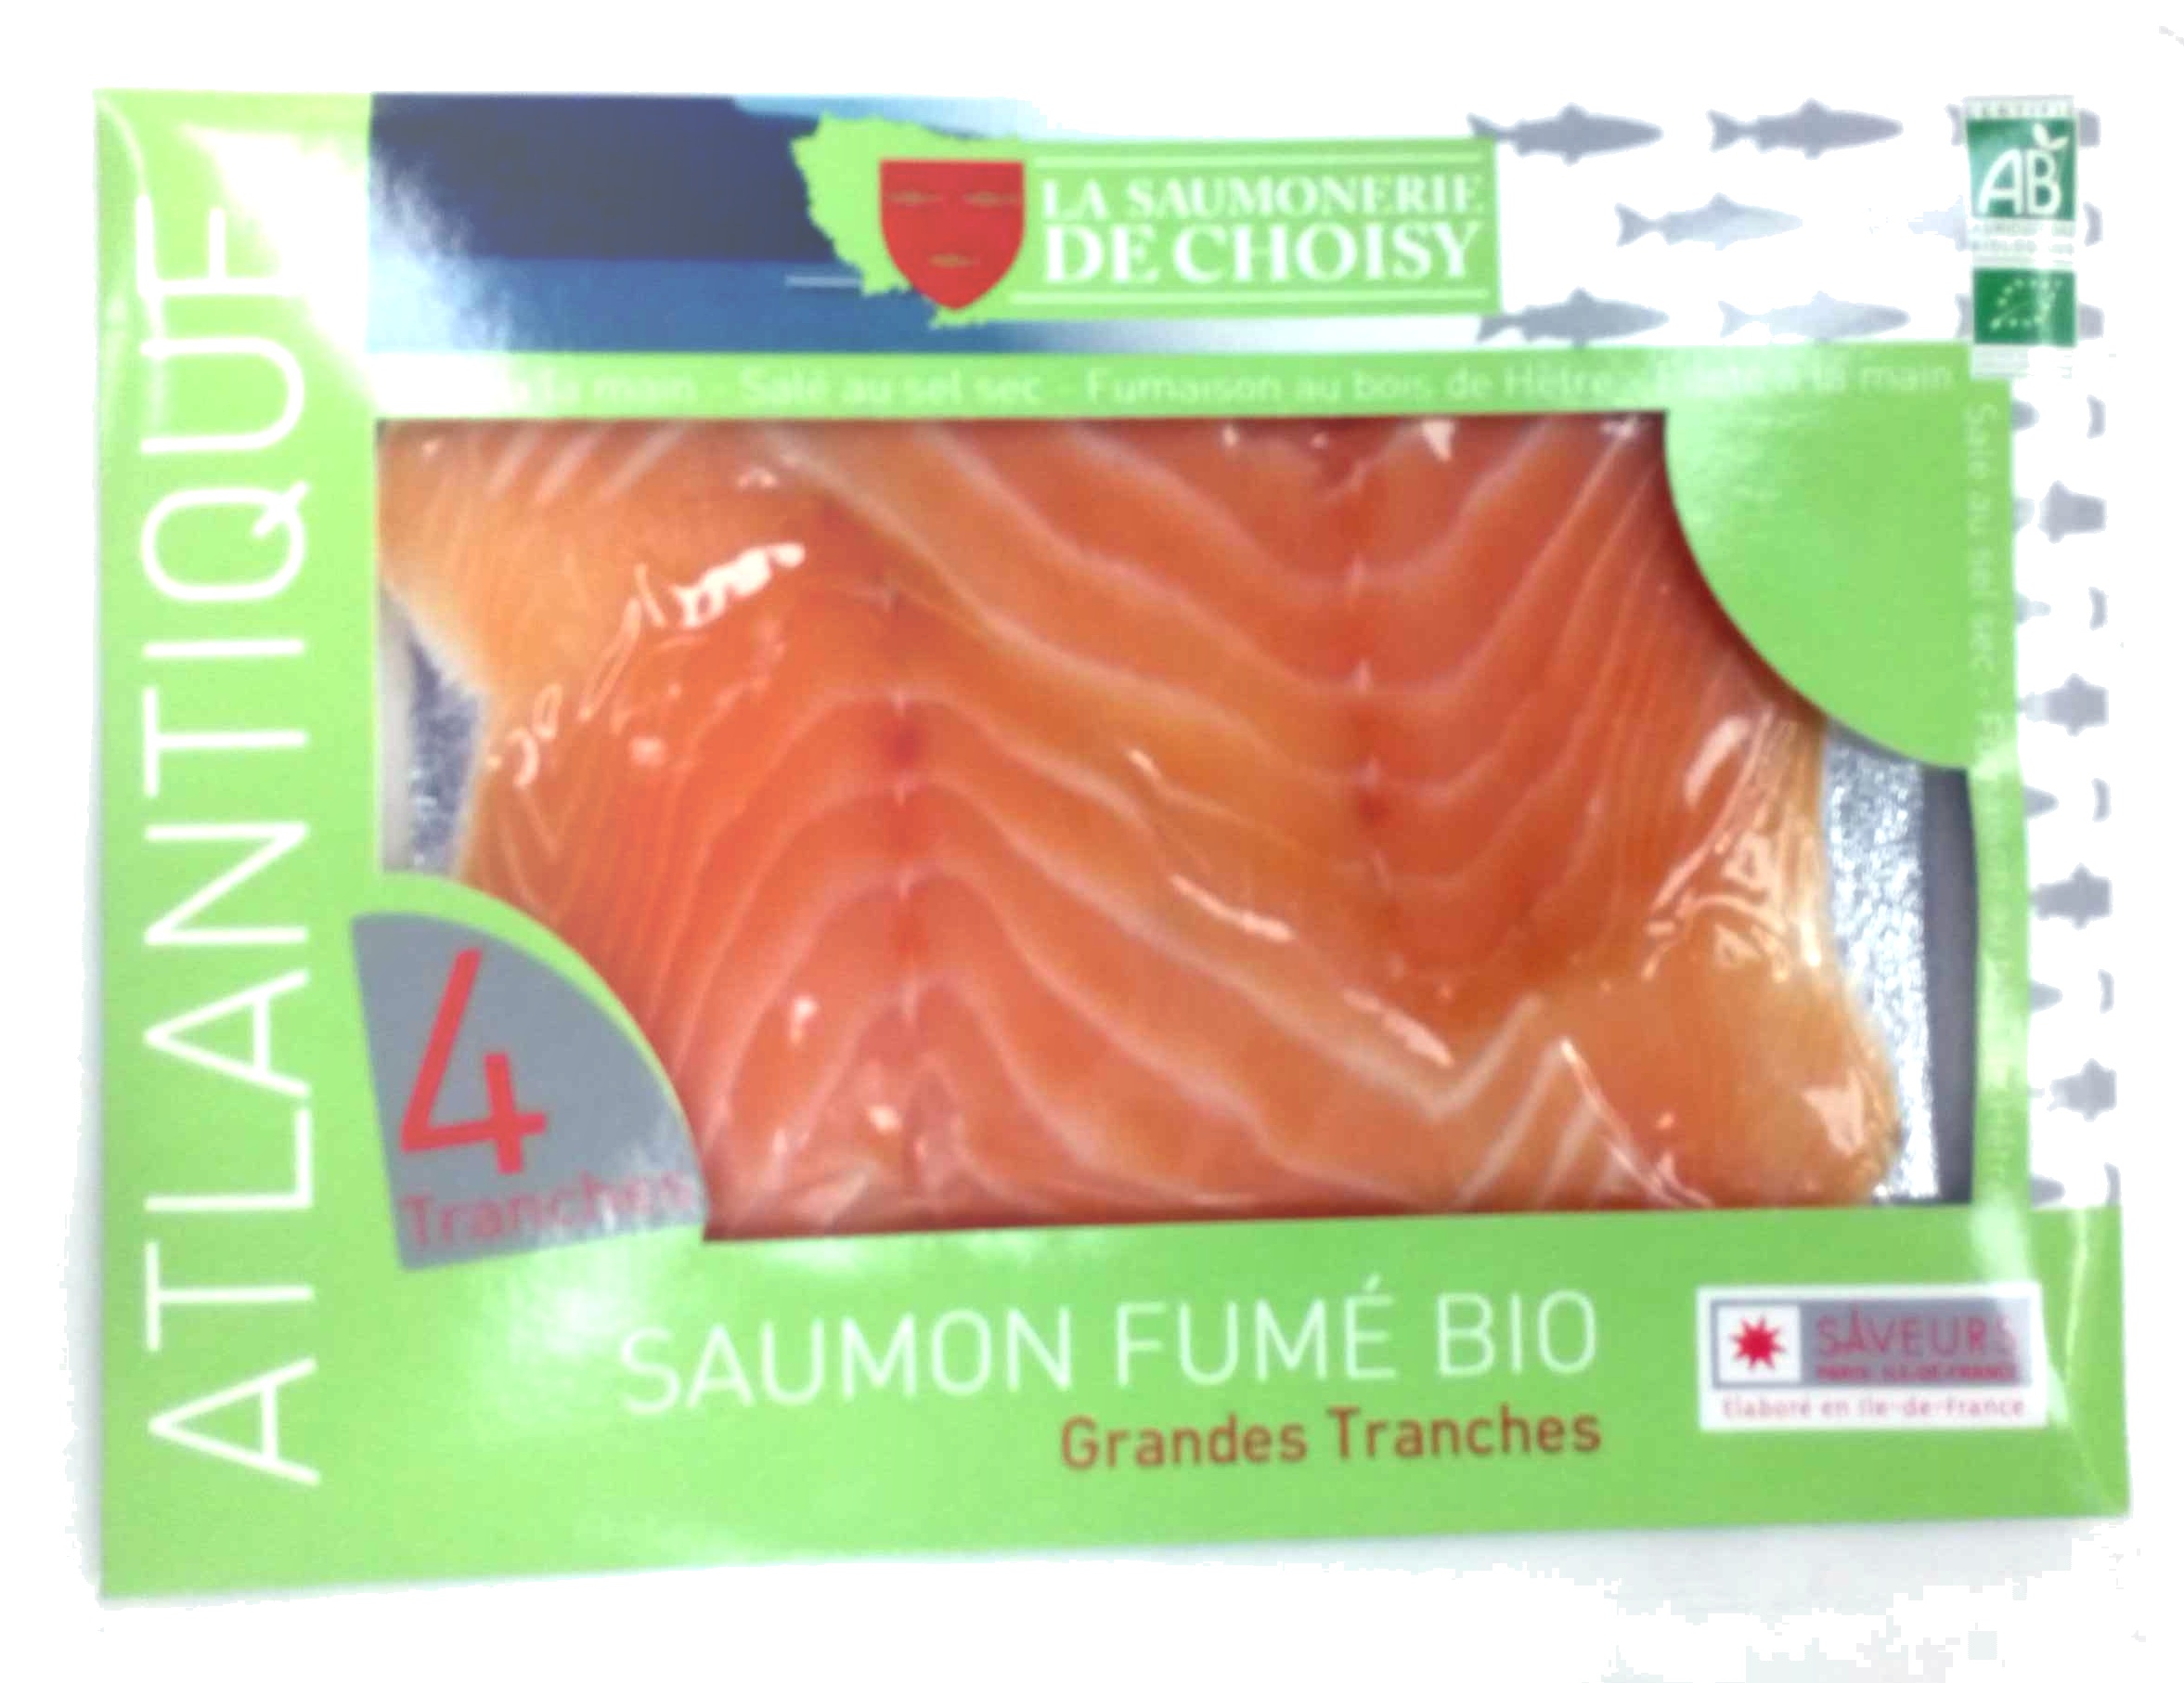 Saumon fumé bio - Grandes Tranches - Product - fr